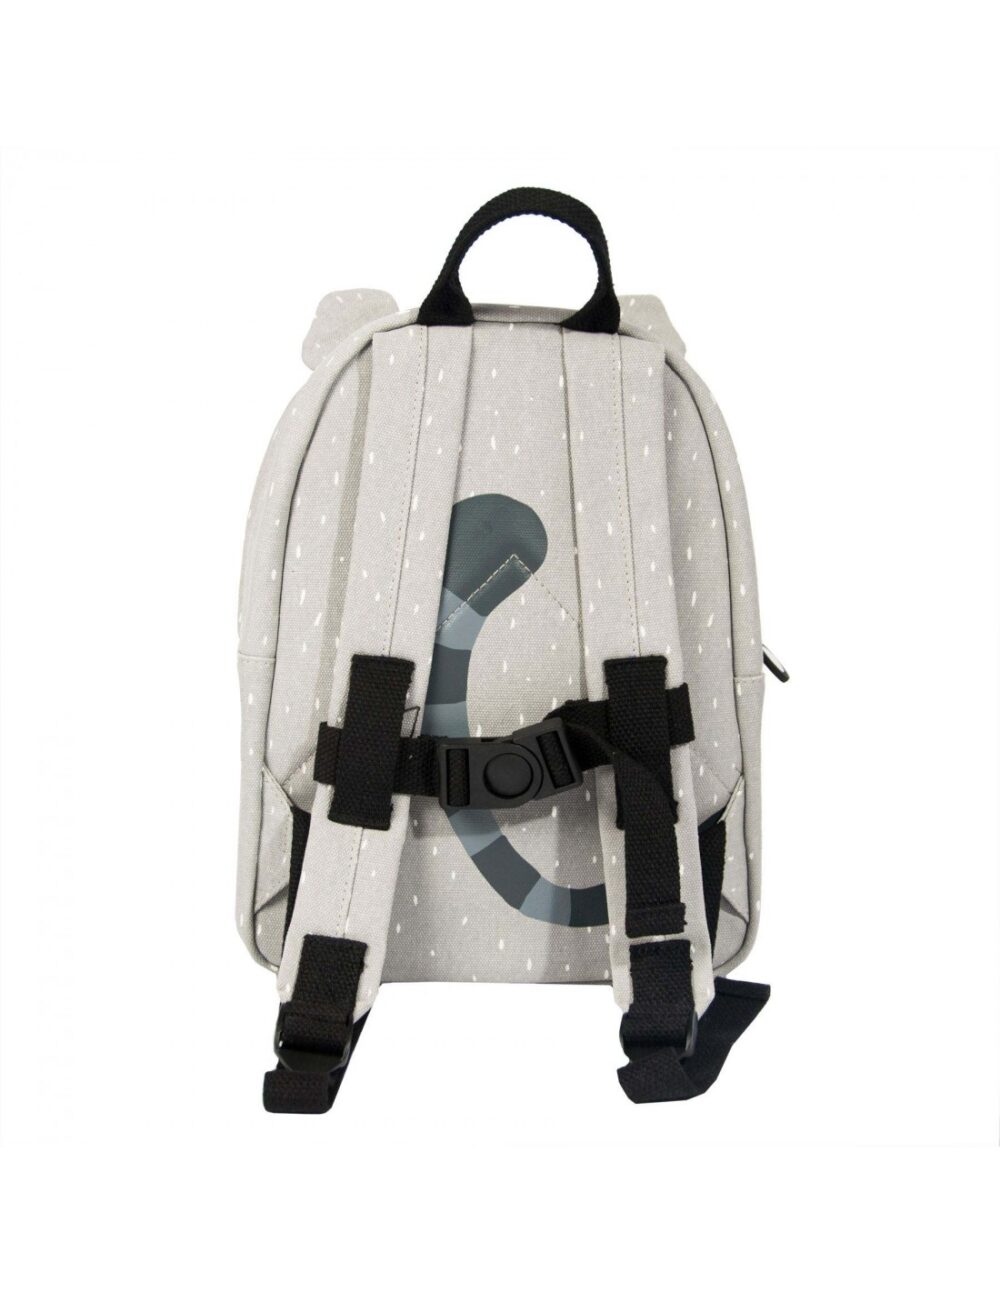 mr raccoon backpack 2